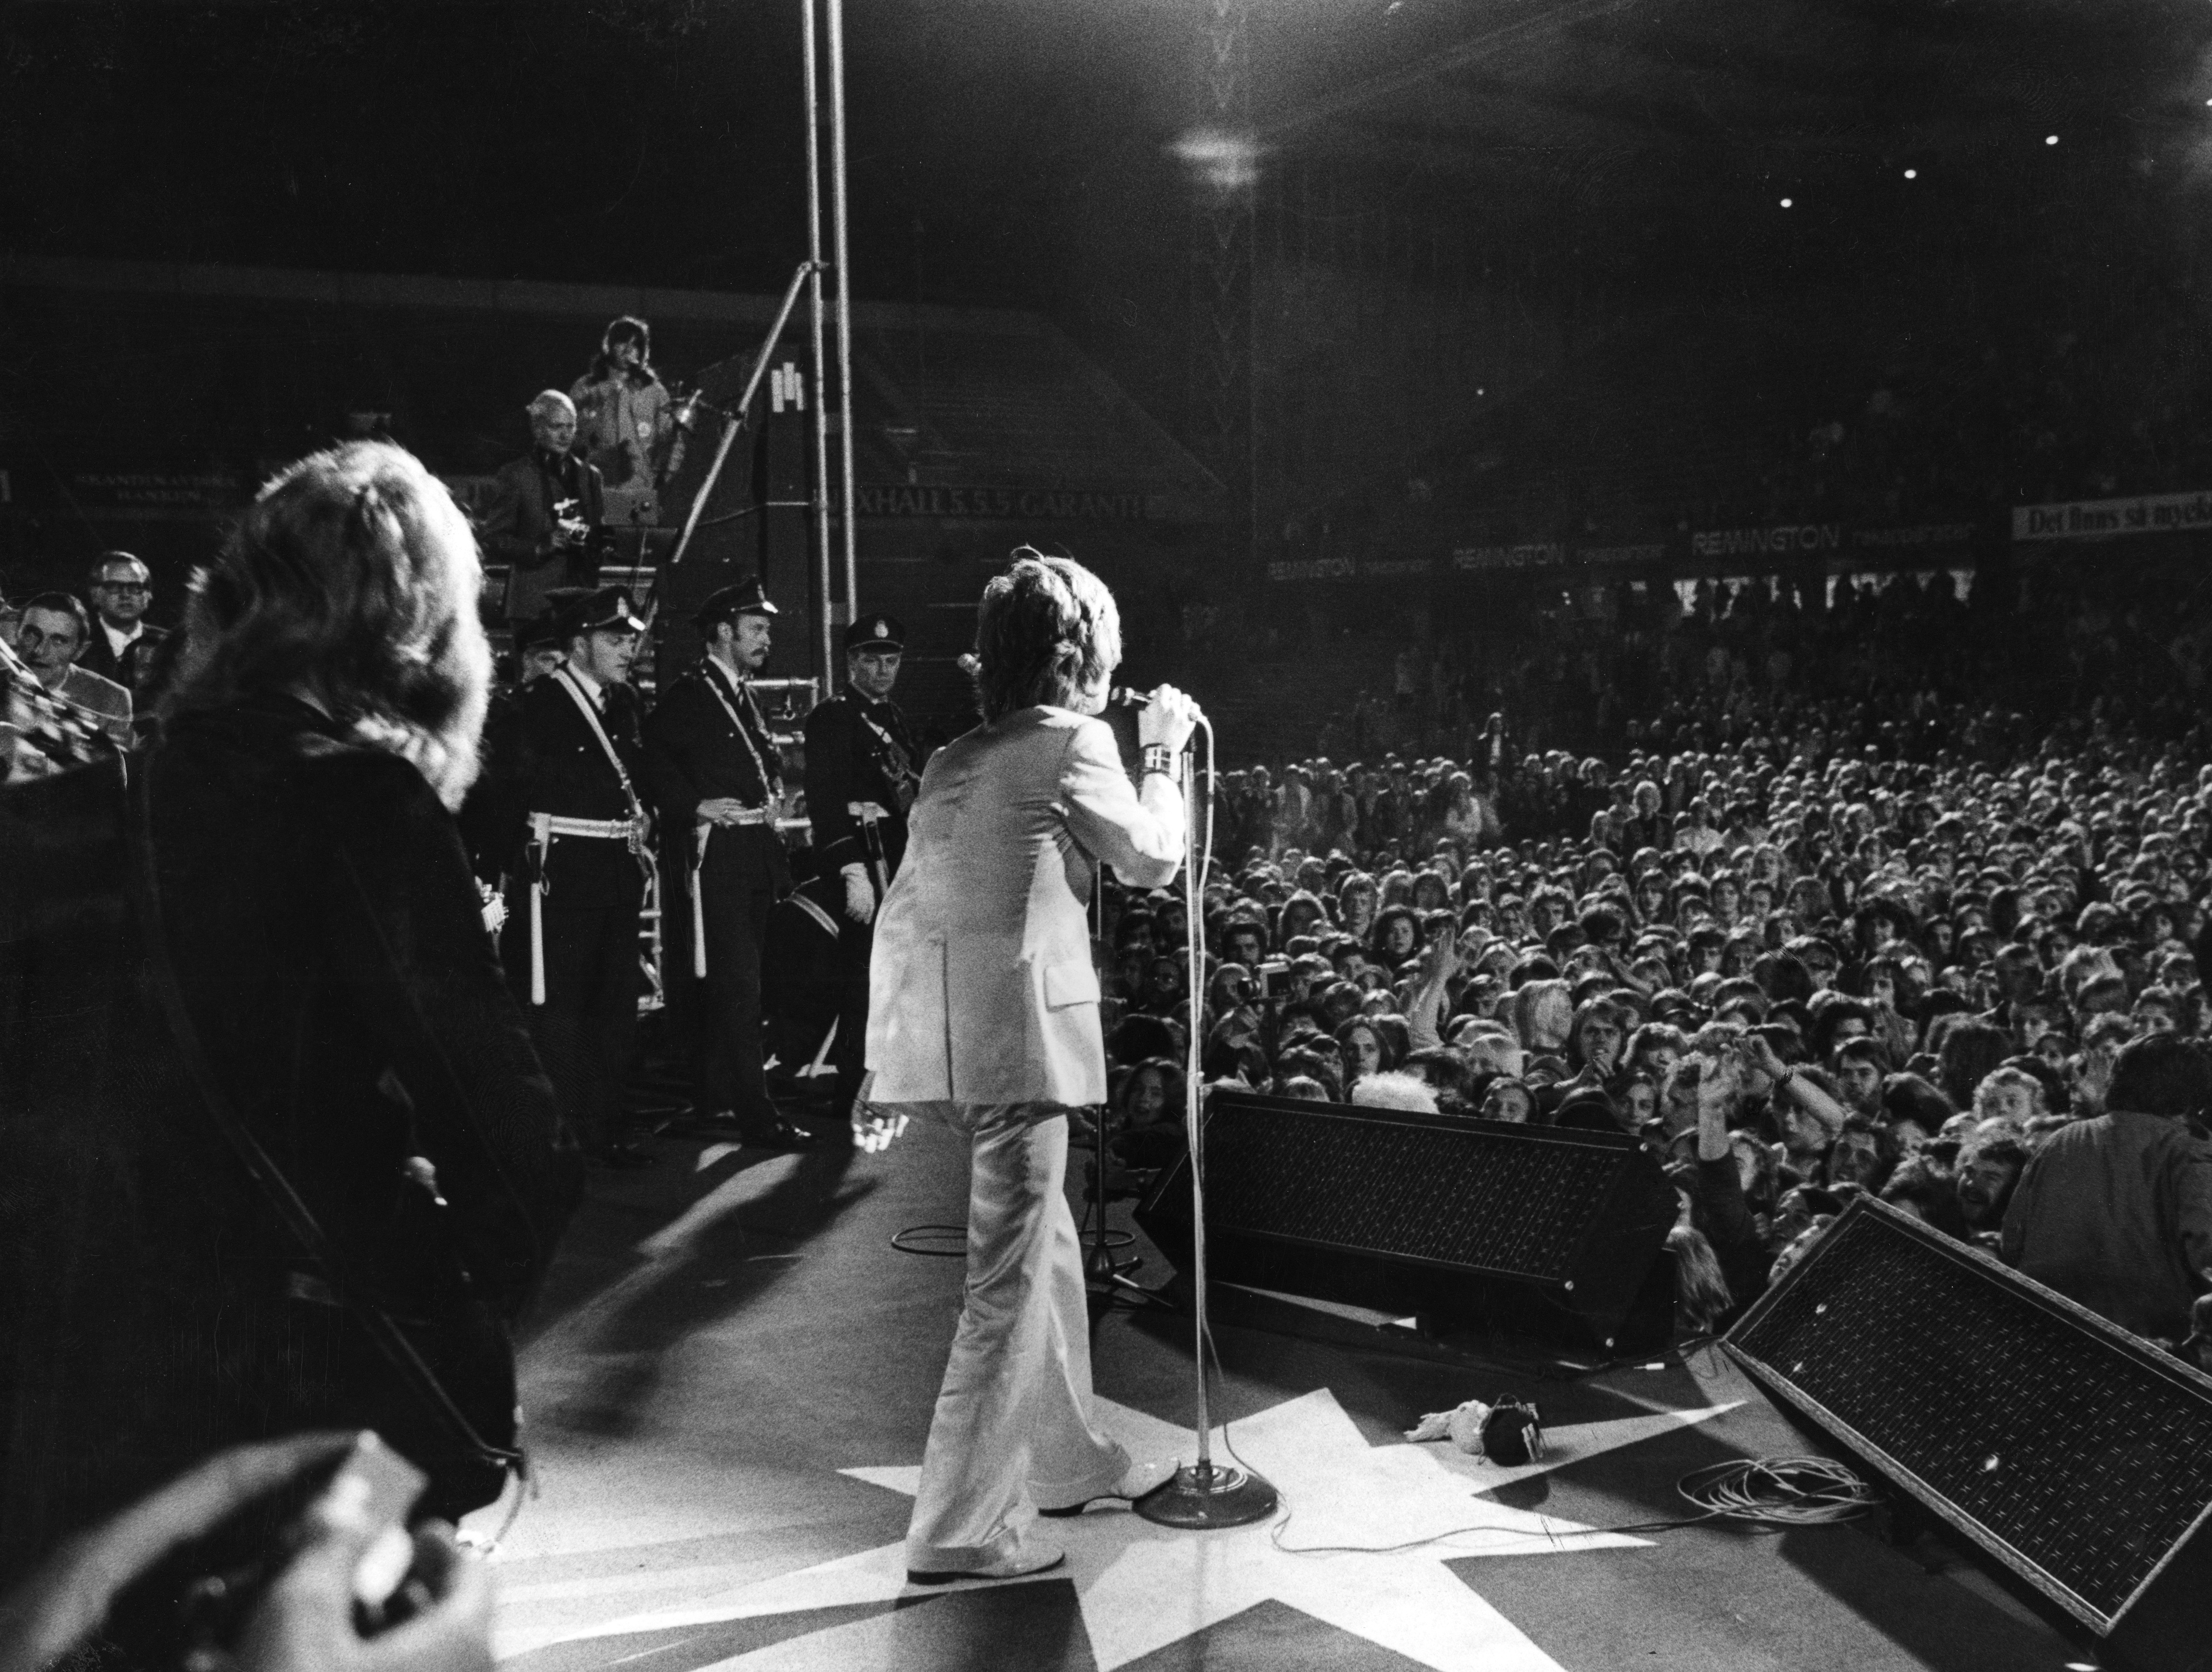 Säga vad man vill om sång-val på Råsundastadion, men artistbokarna har genom åren levererat guldkorn på guldkorn. Här syns Rolling Stones under bandets gyllene år.